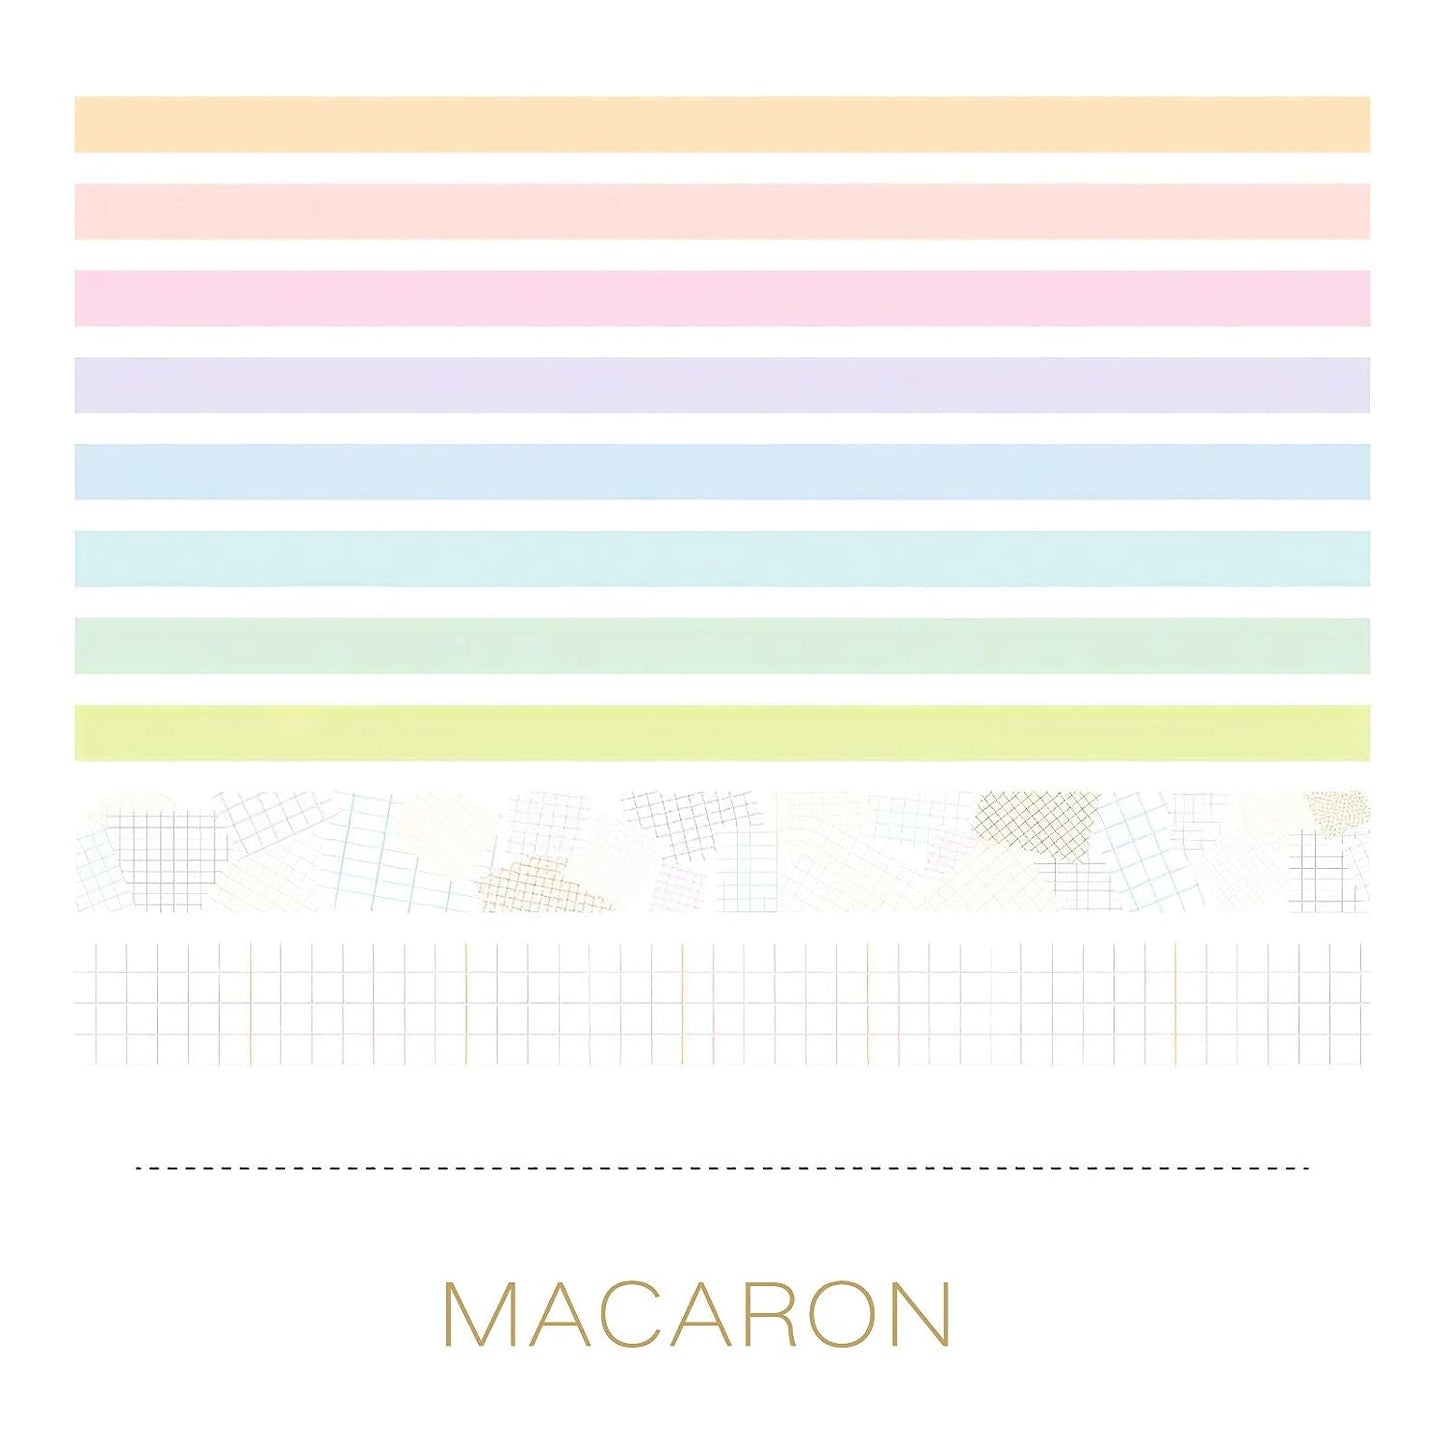 Set of 10 Pastel Macron Washi Tapes